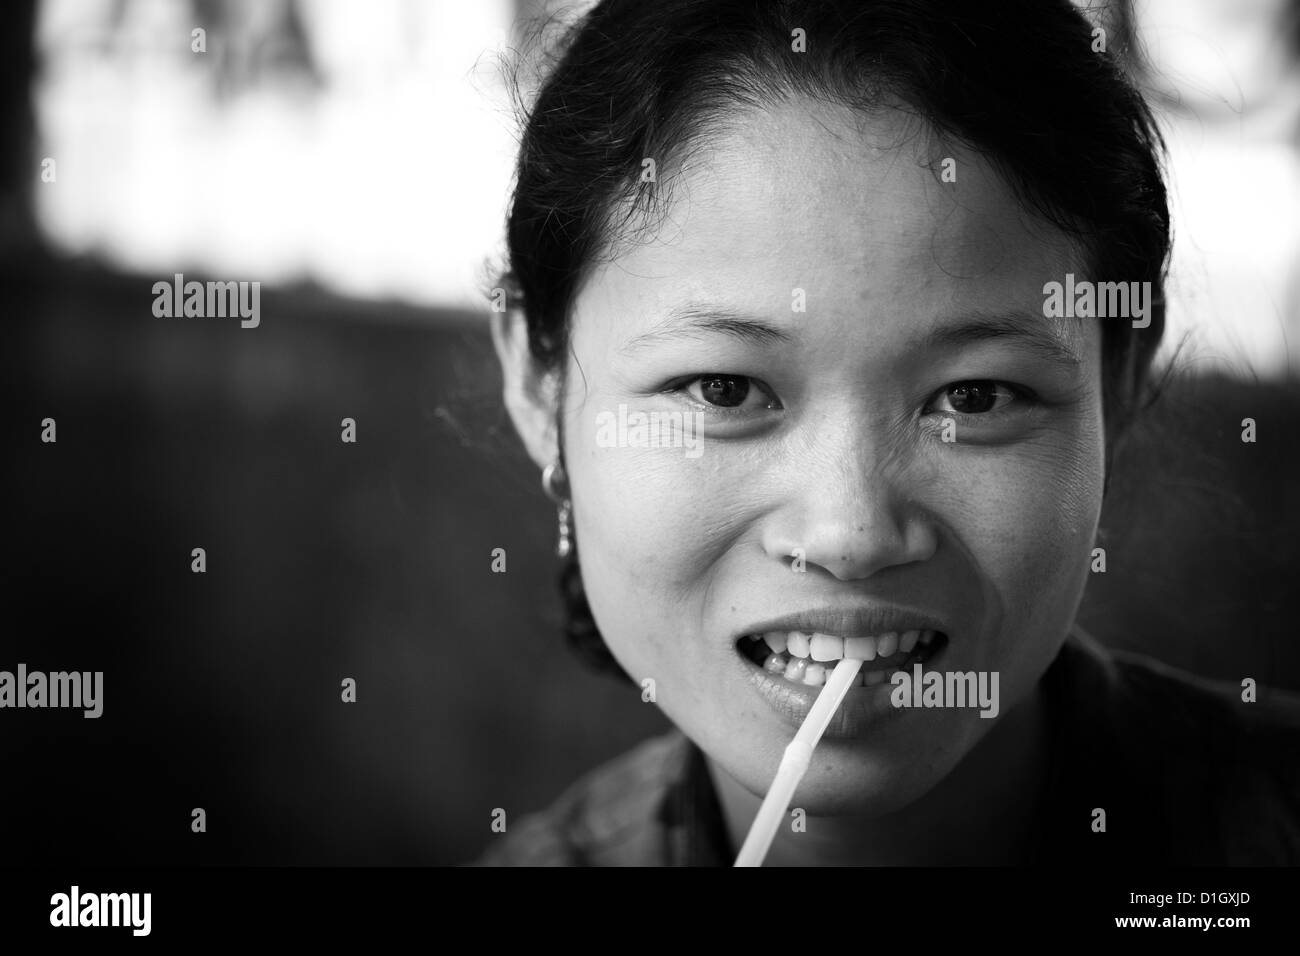 Vietnamienne de boire avec une paille Banque D'Images